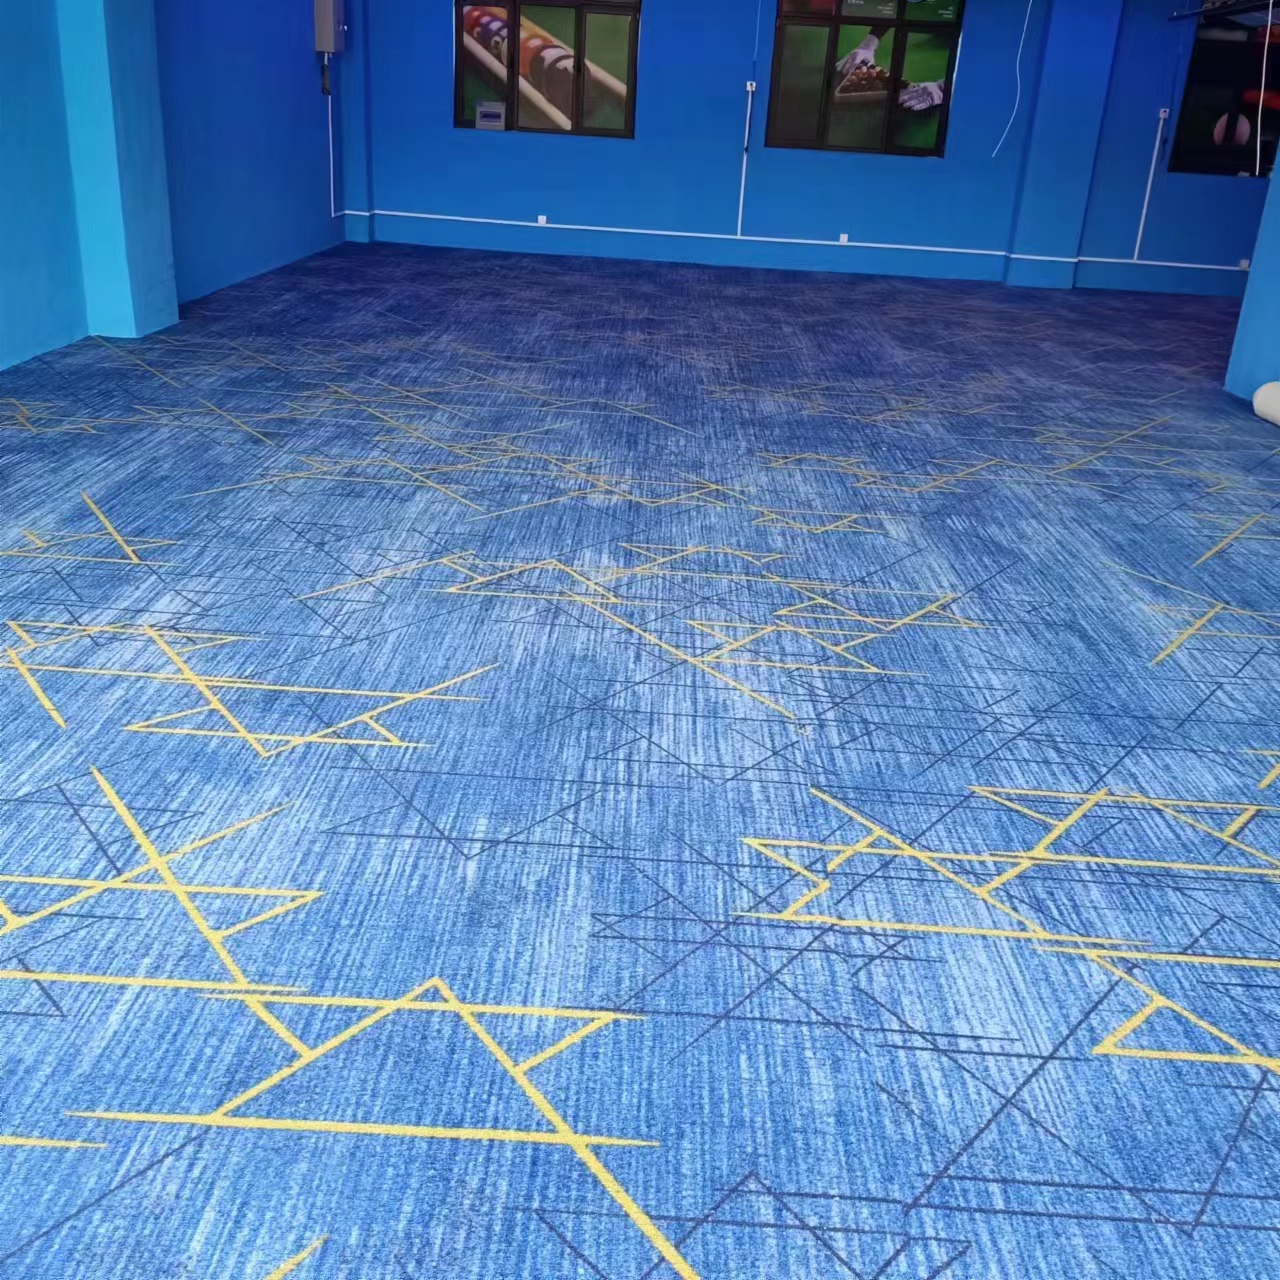 台球厅地毯